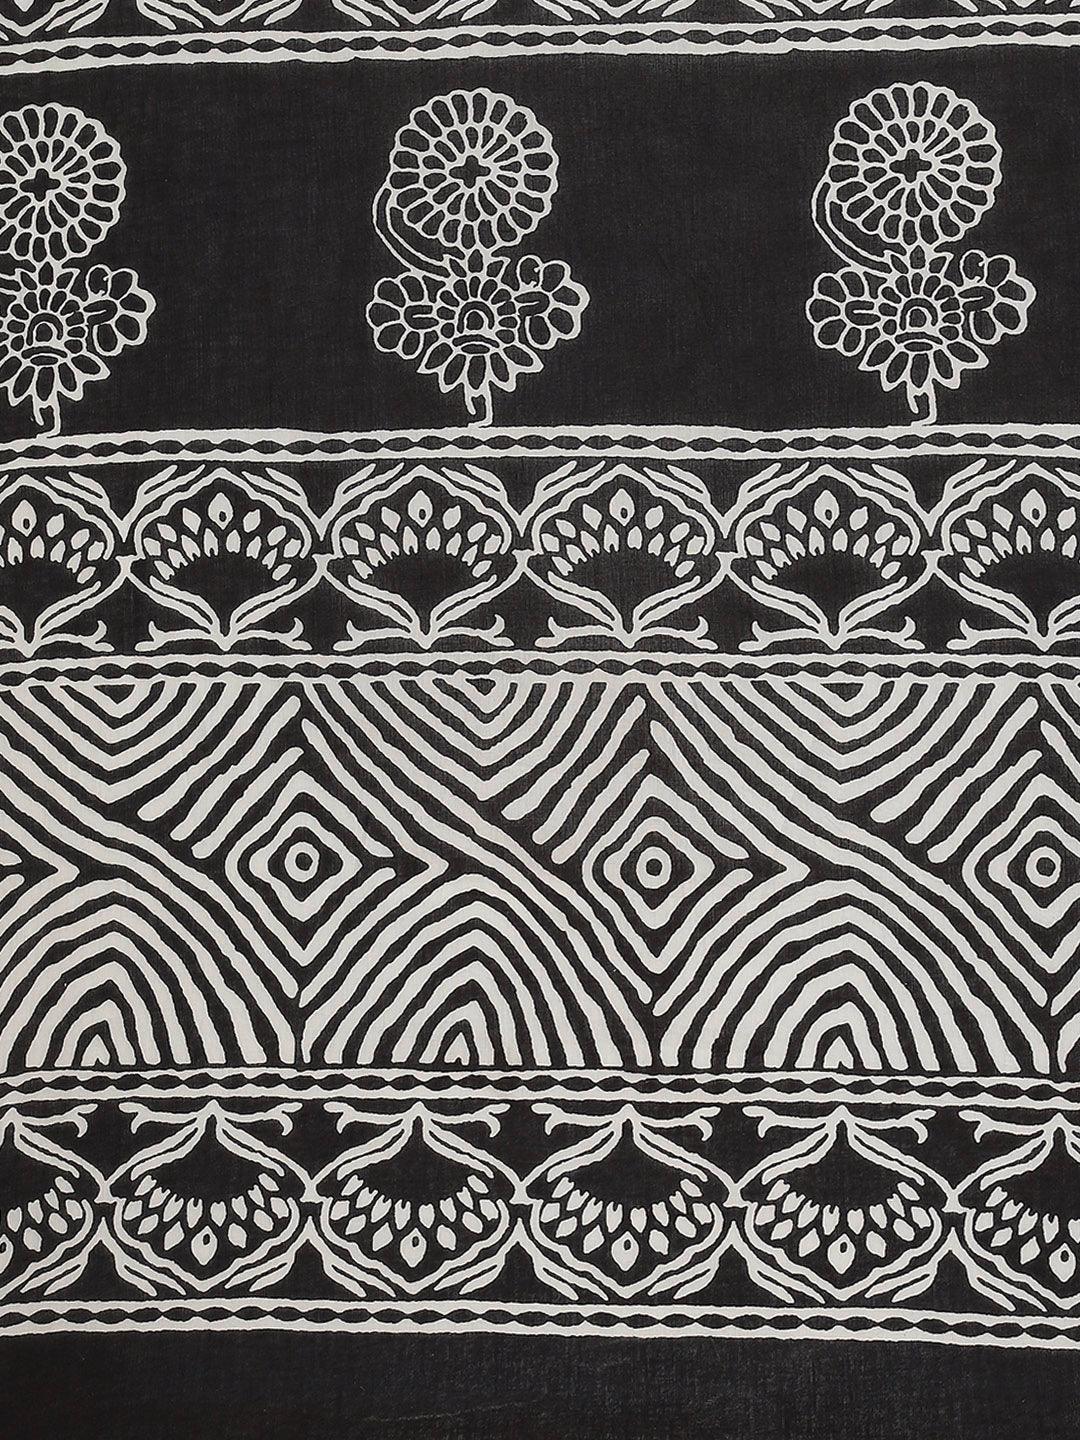 Black Printed Cotton Saree